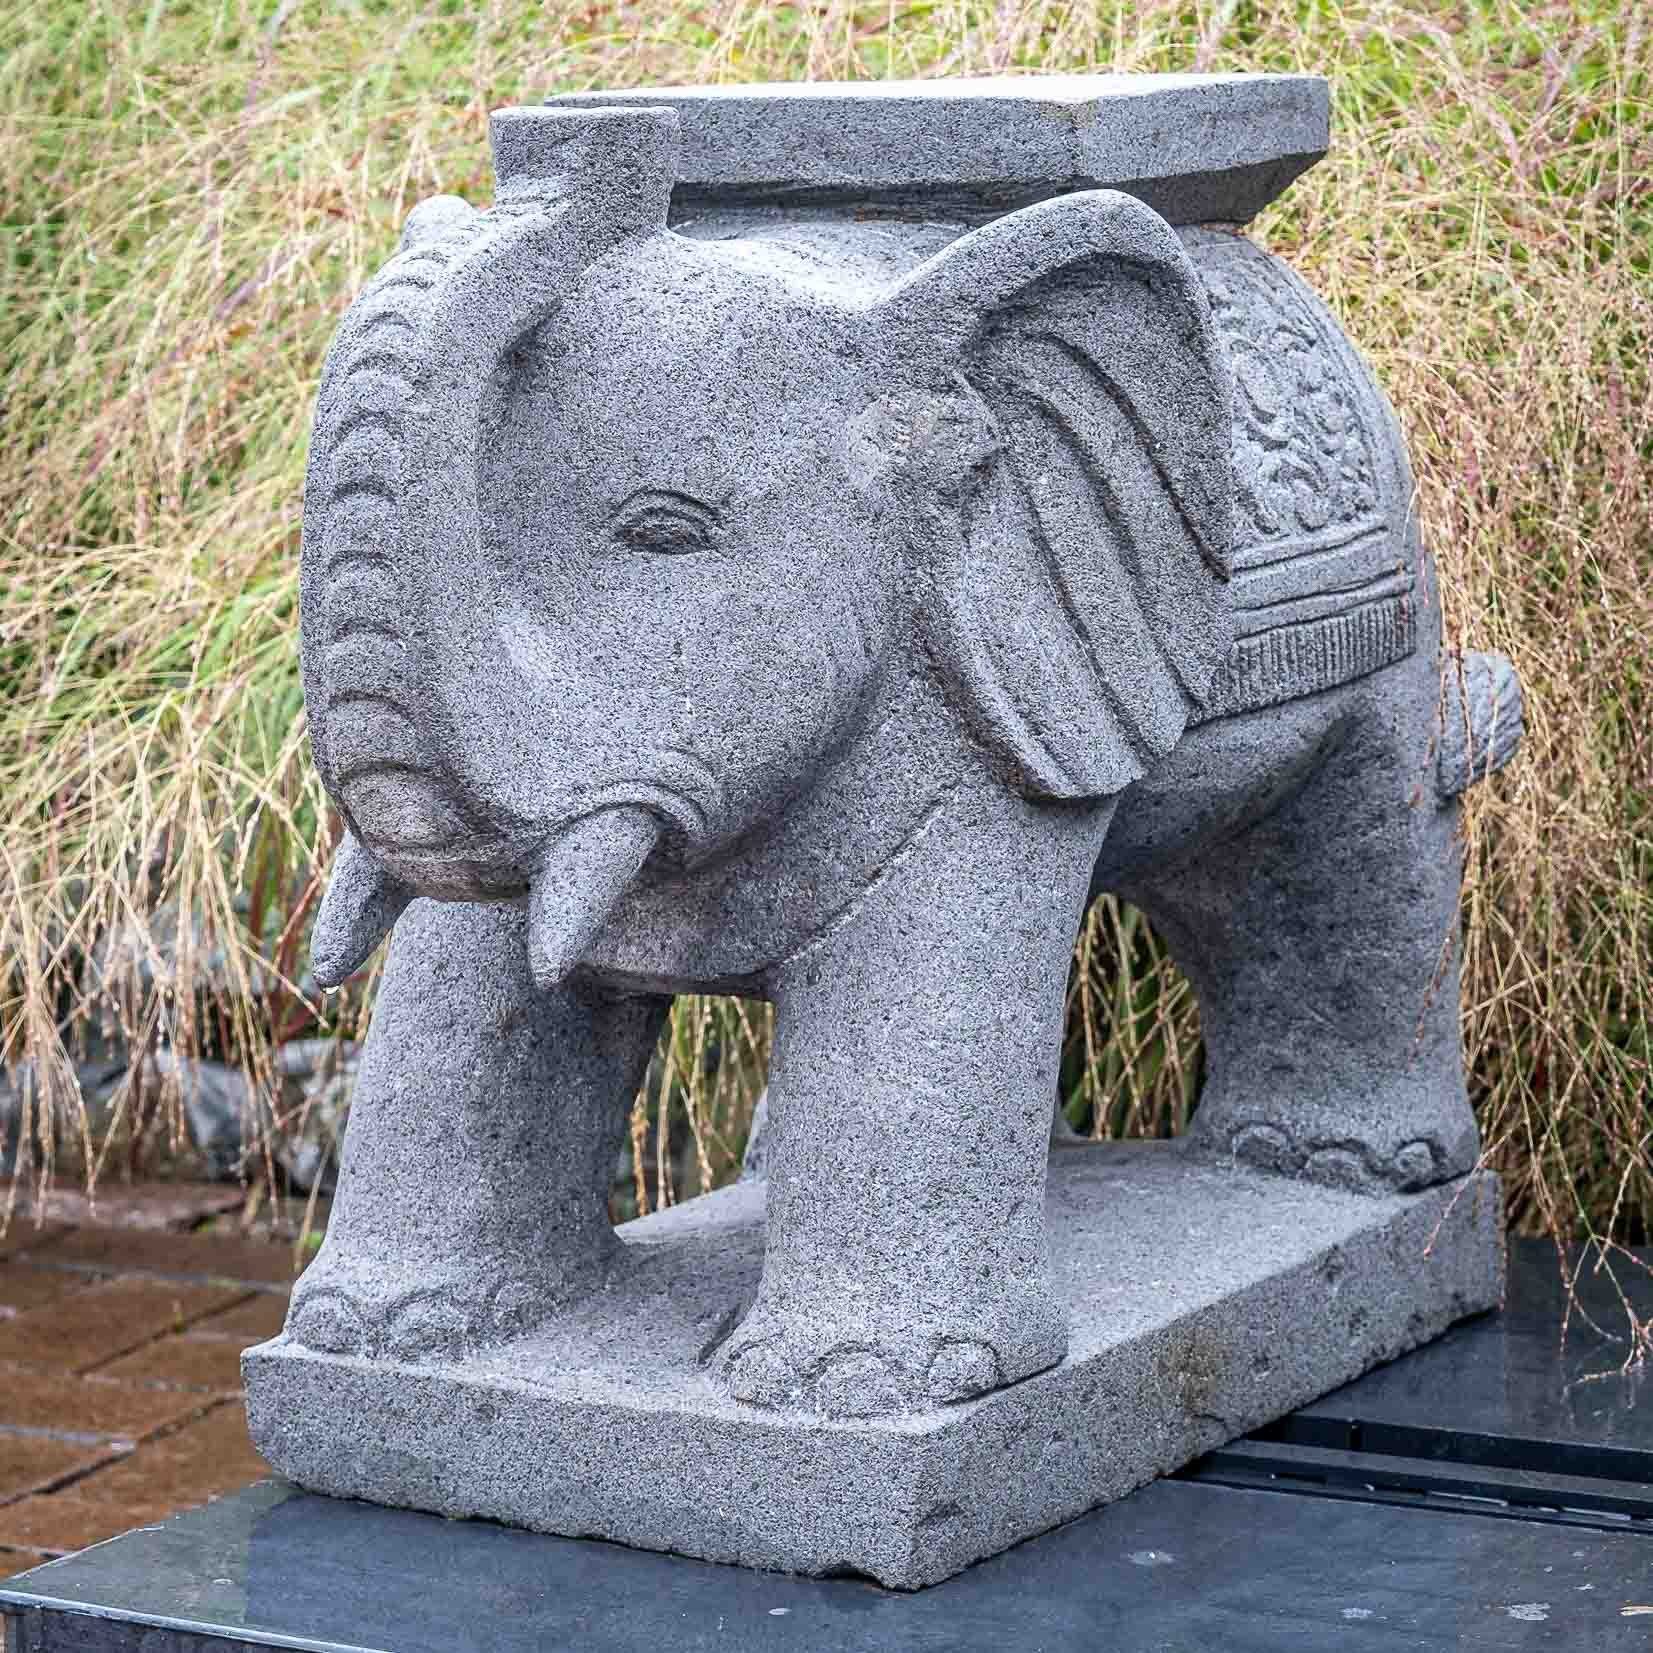 IDYL IDYL – sehr Lavastein und Frost, witterungsbeständig Regen ein – Naturprodukt Elefant, Figur robust Gartenfigur UV-Strahlung. Lavastein– gegen